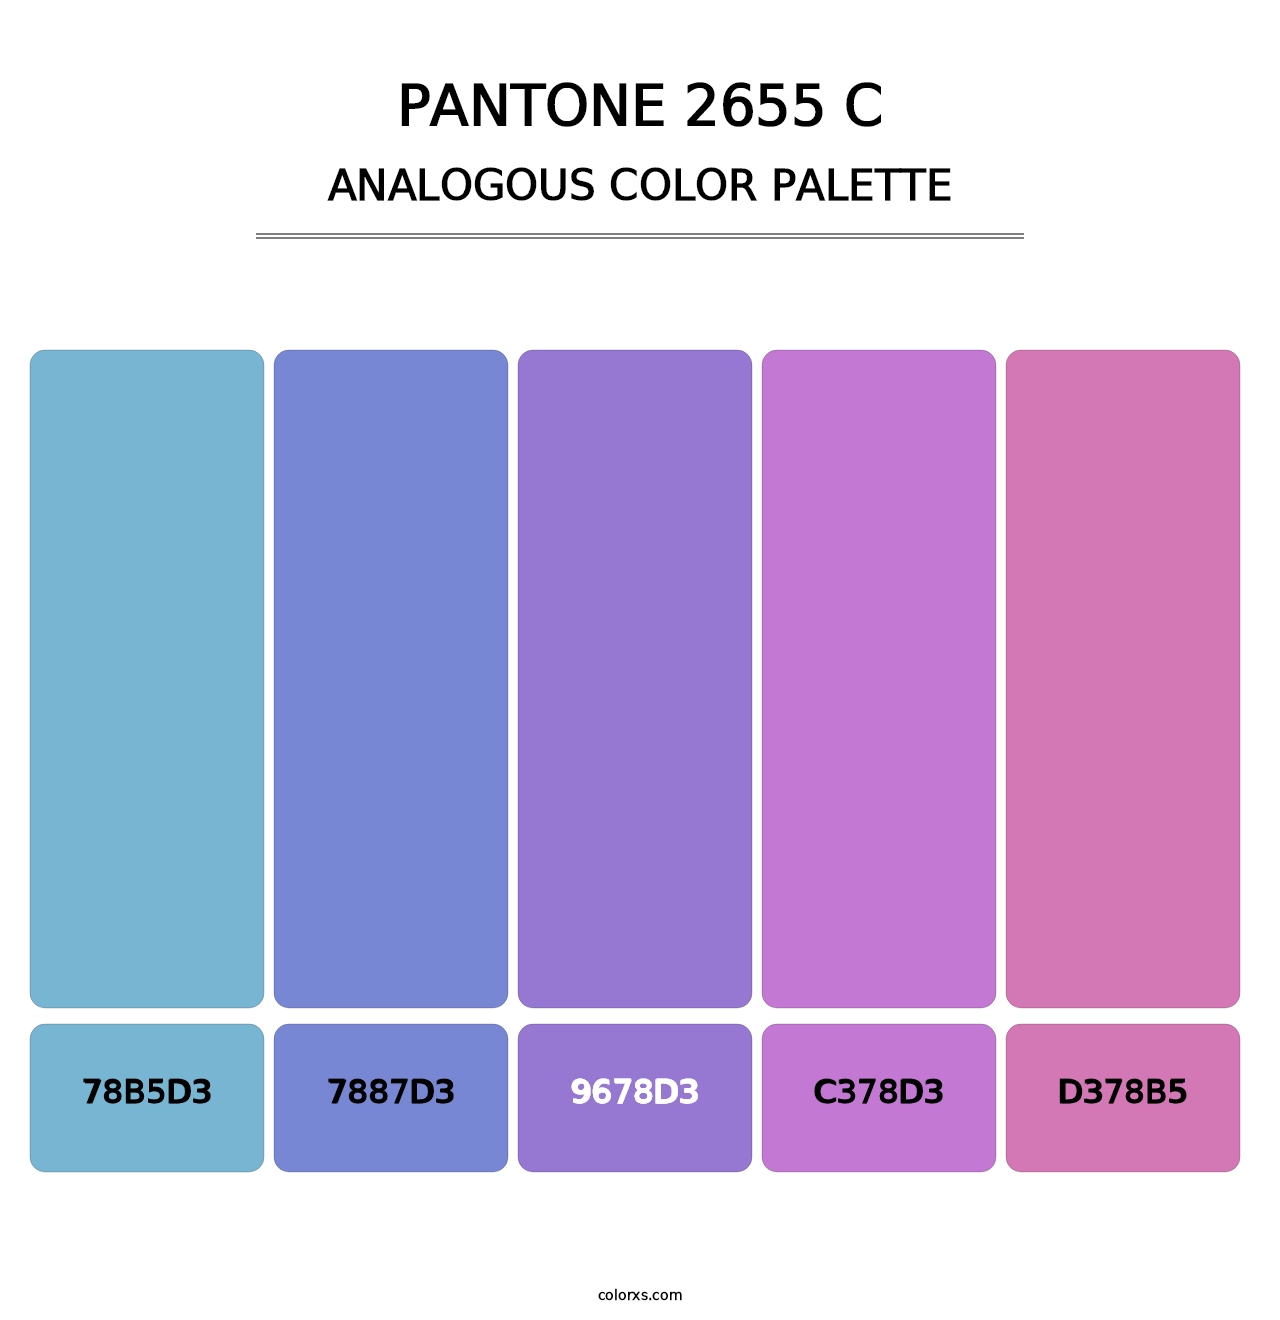 PANTONE 2655 C - Analogous Color Palette